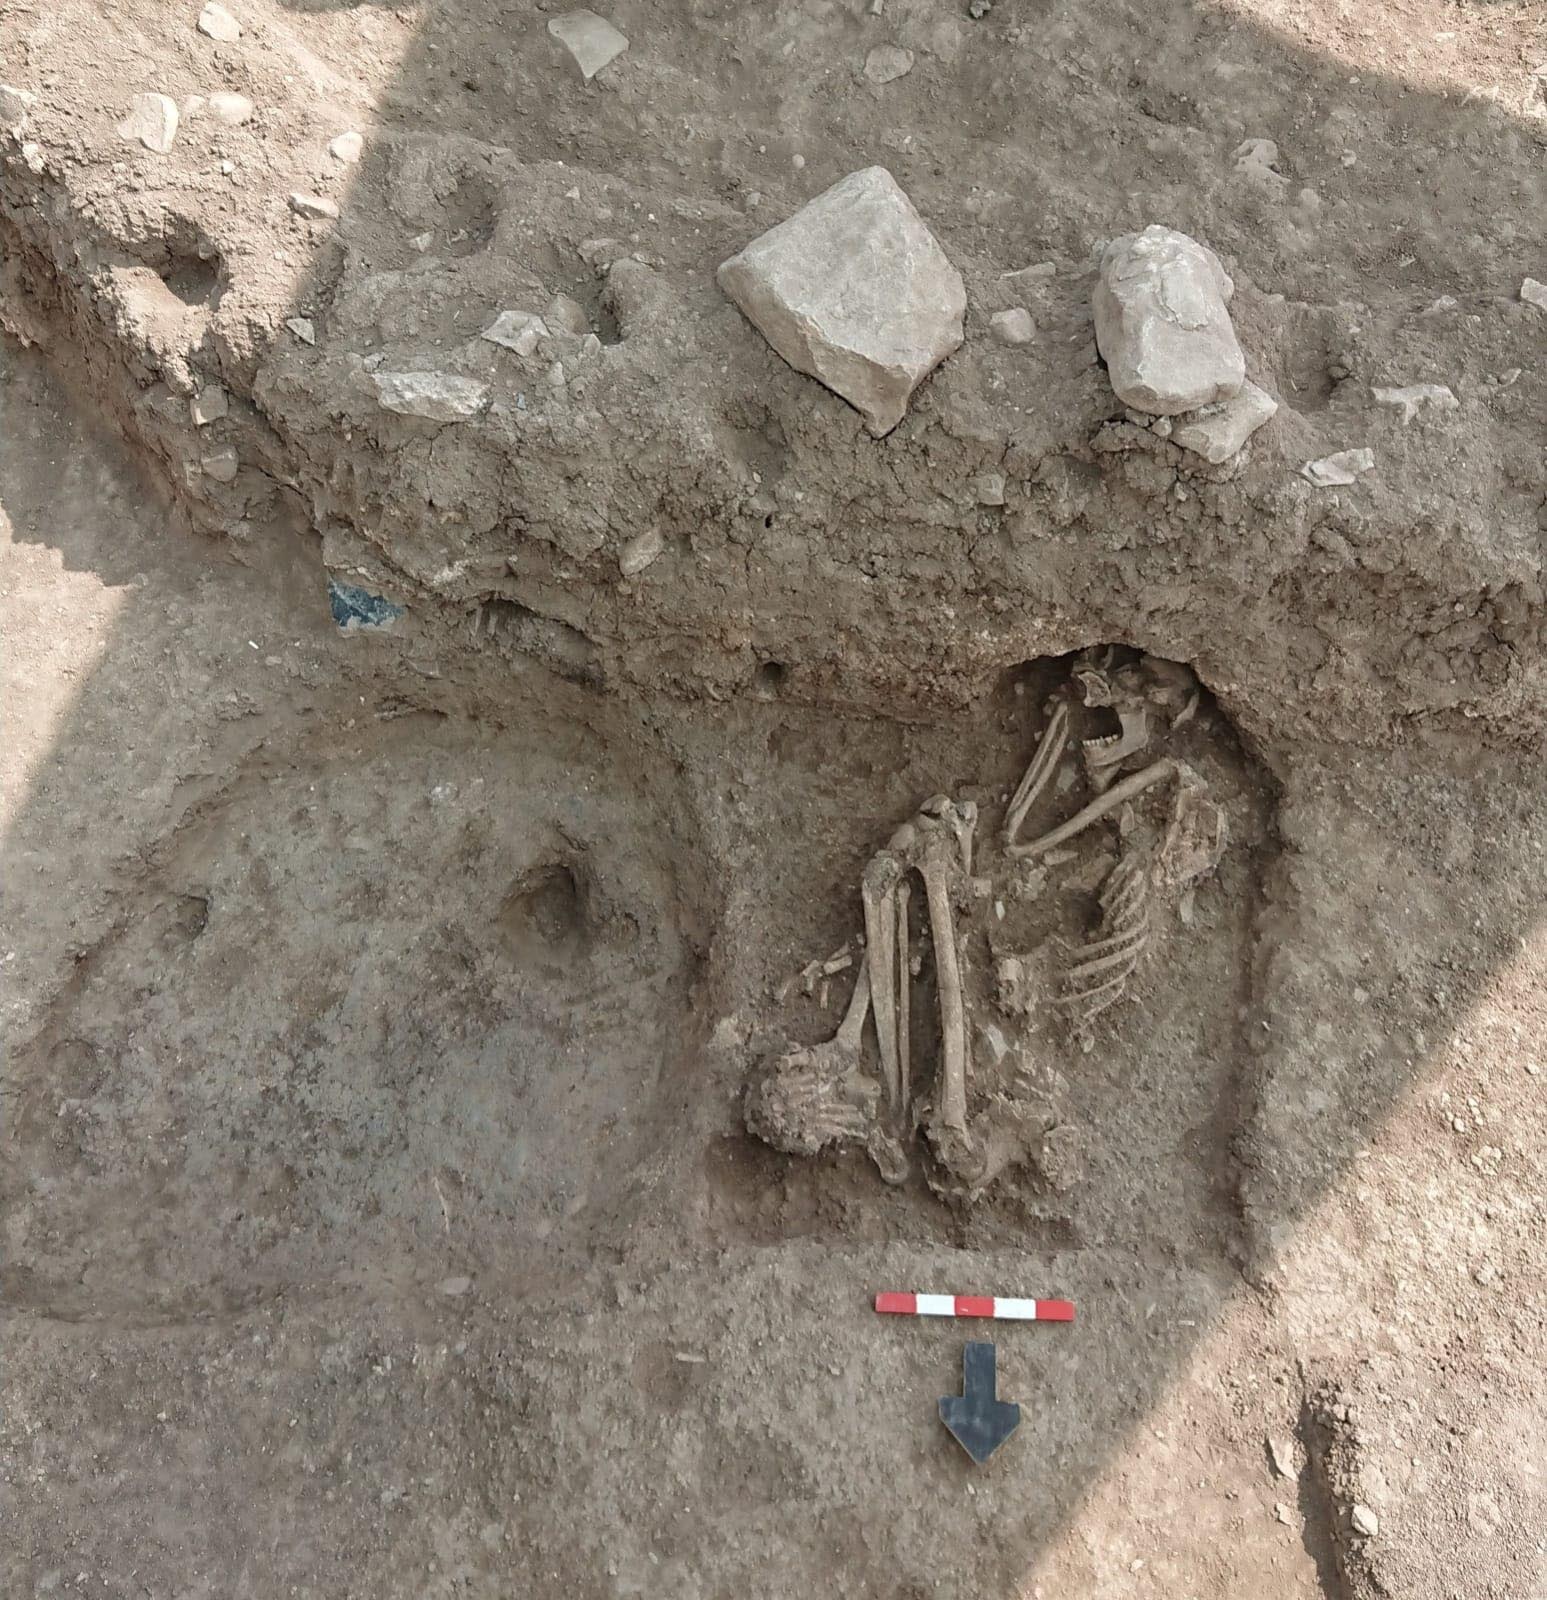 bilecikte-bulunan-8-bin-500-yillik-insan-iskeletinin-dnasi-incelenecek-5640-dhaphoto2.jpg